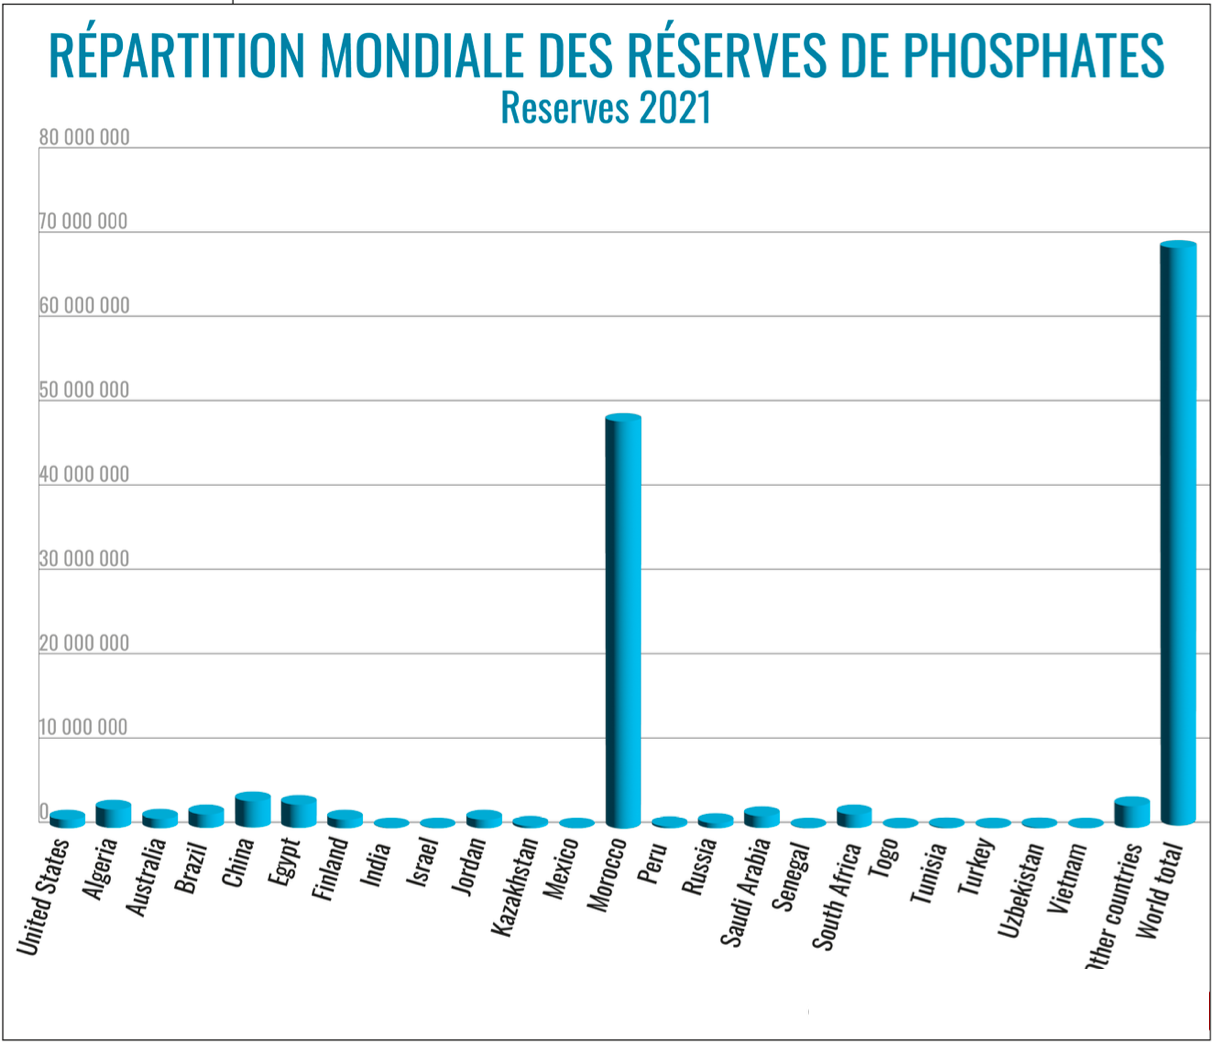 Le Maroc dispose de 72,4% des réserves mondiales de phosphates